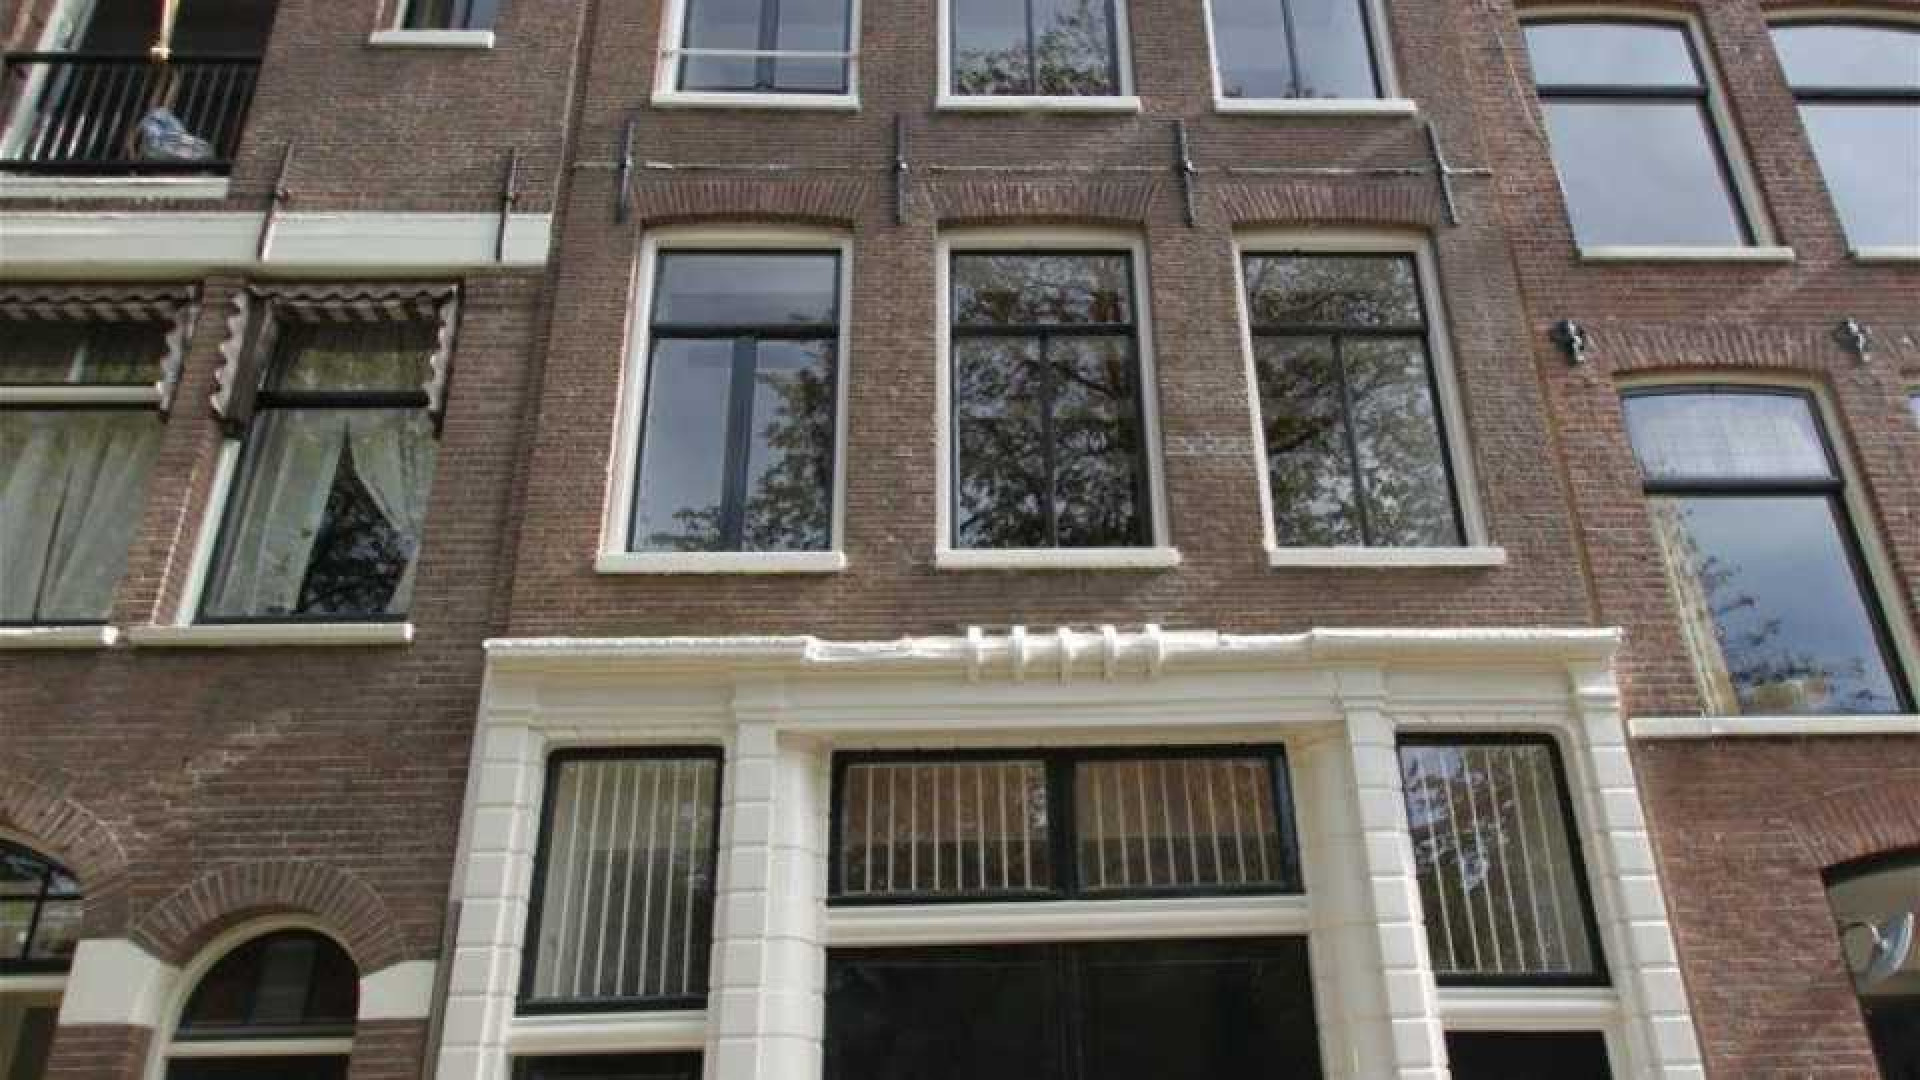 DJ Tiesto verlaagt huur van zijn luxe dubbele bovenhuis in Amsterdam. 1